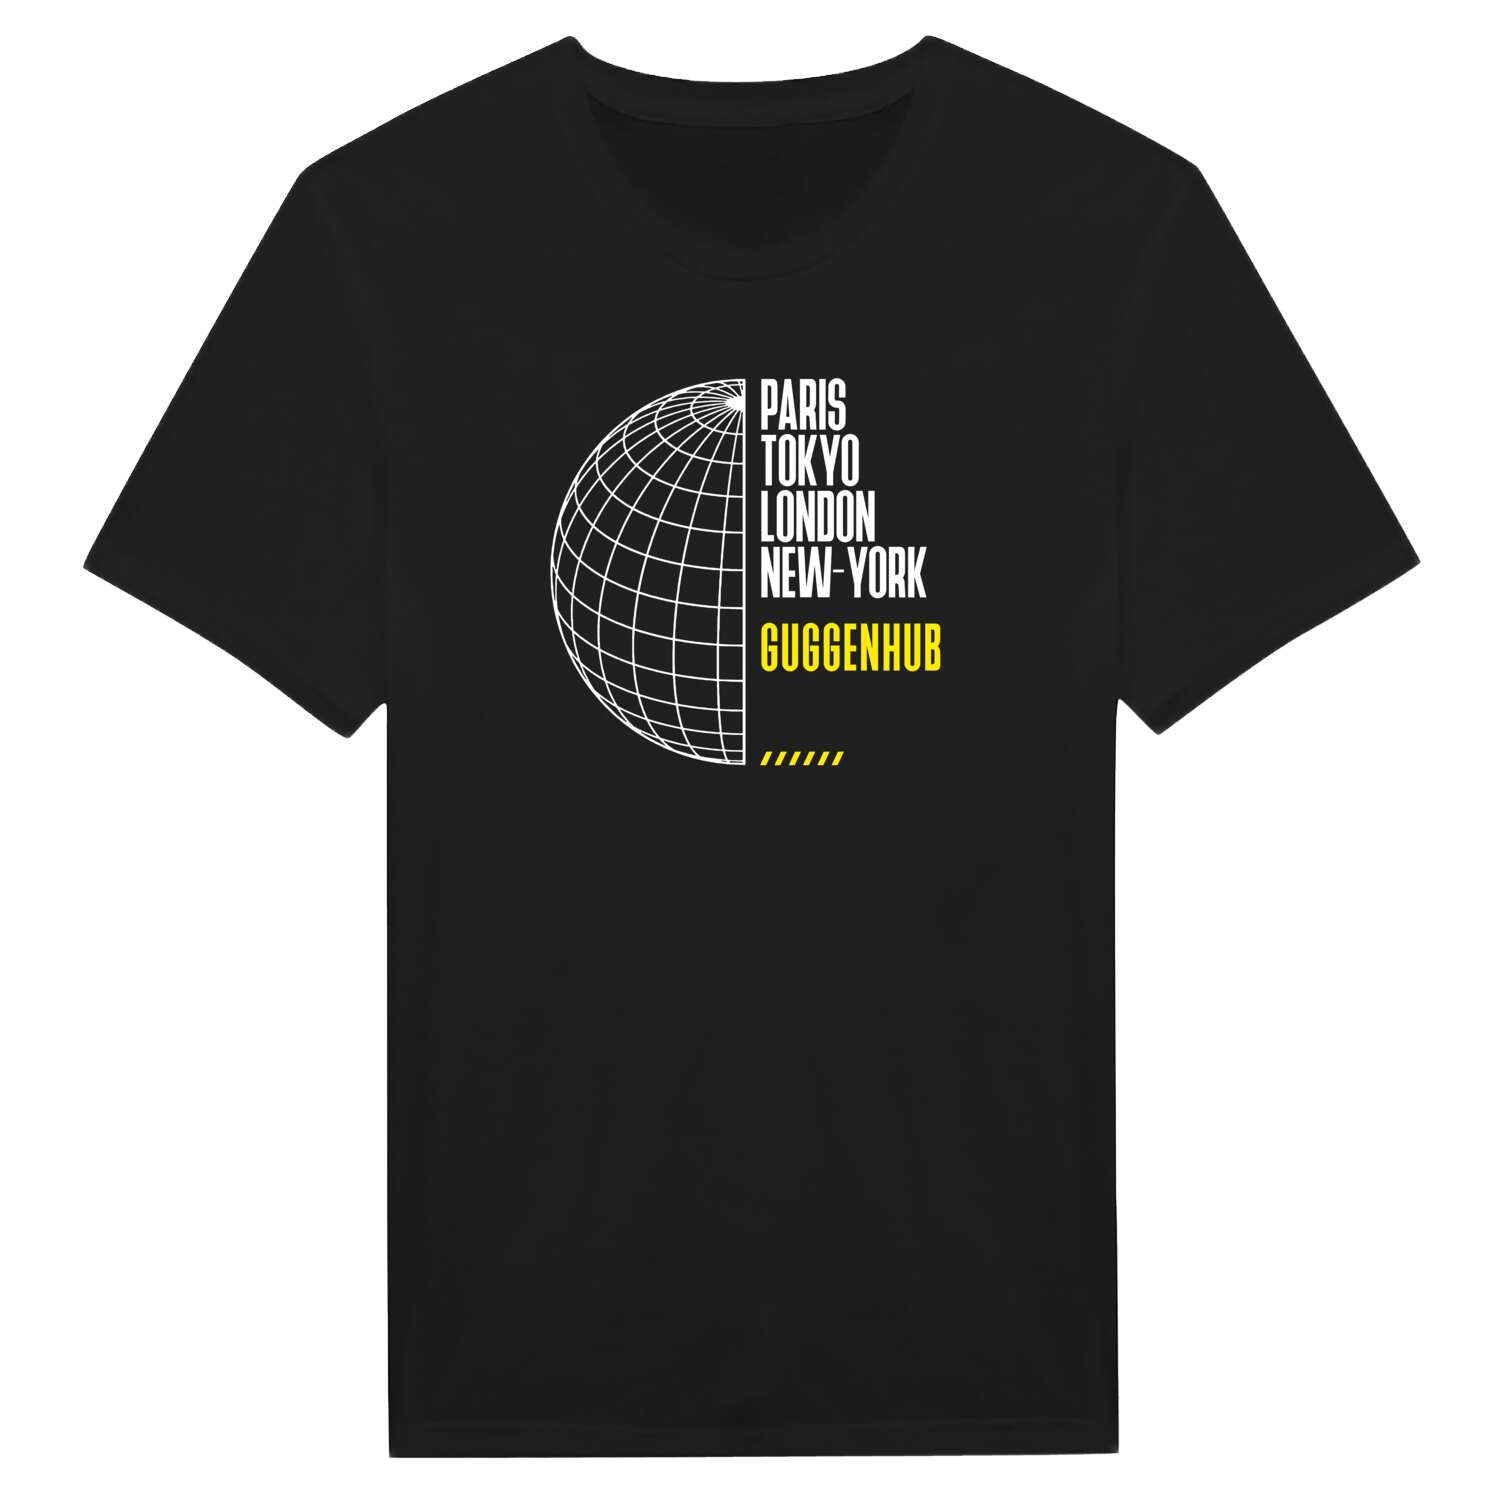 Guggenhub T-Shirt »Paris Tokyo London«